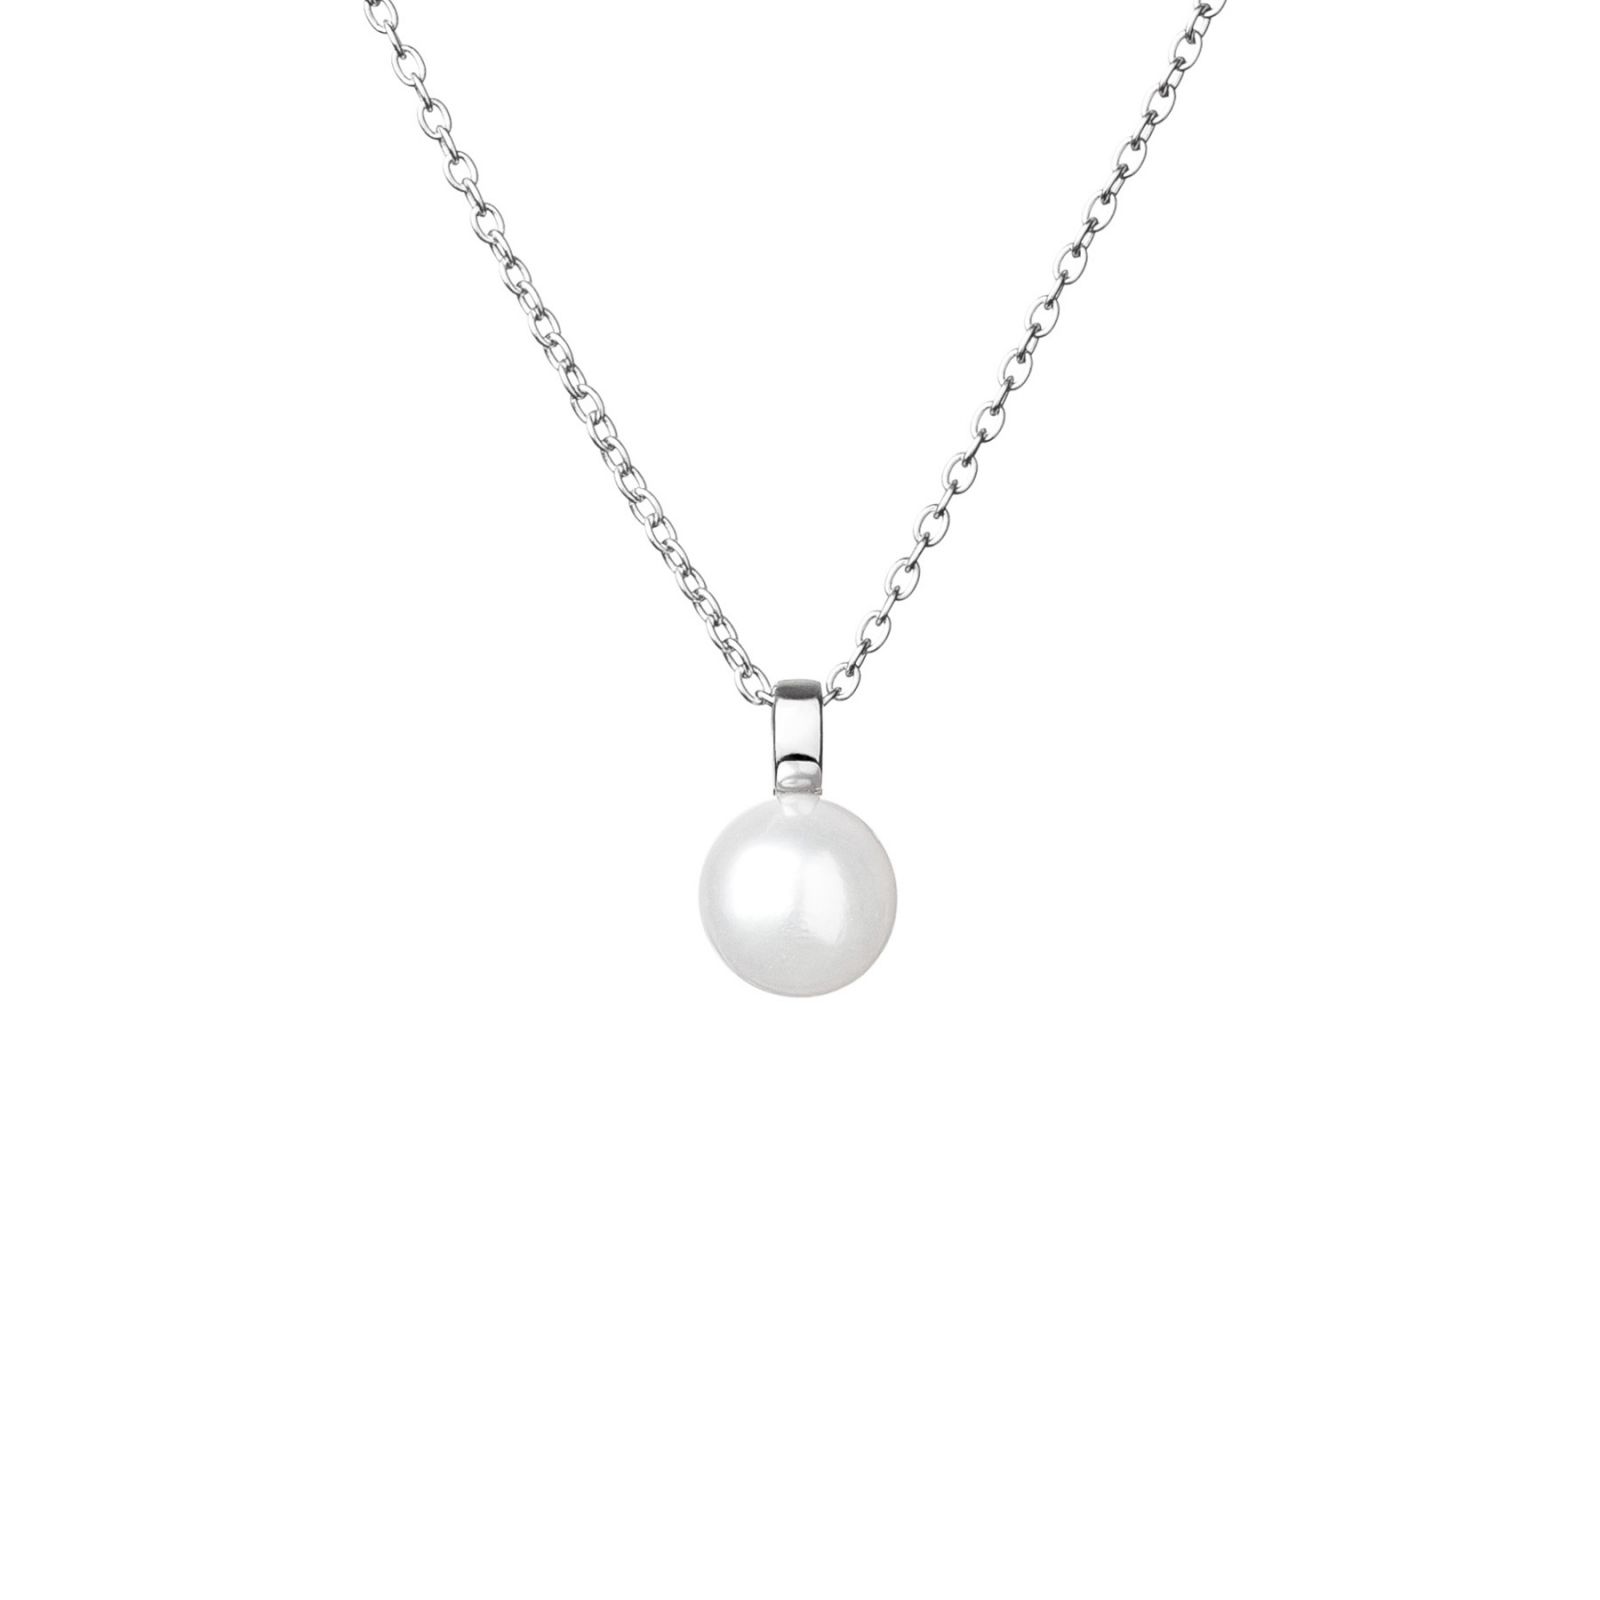 NATURALAUS PERLO pakabukas  sidabrine grandinele tikras perlas dovana kaledine gimtadienui jubiliejui moterims zmonai panelei sesei dukrai mamai geriausiai draugei SK20109P